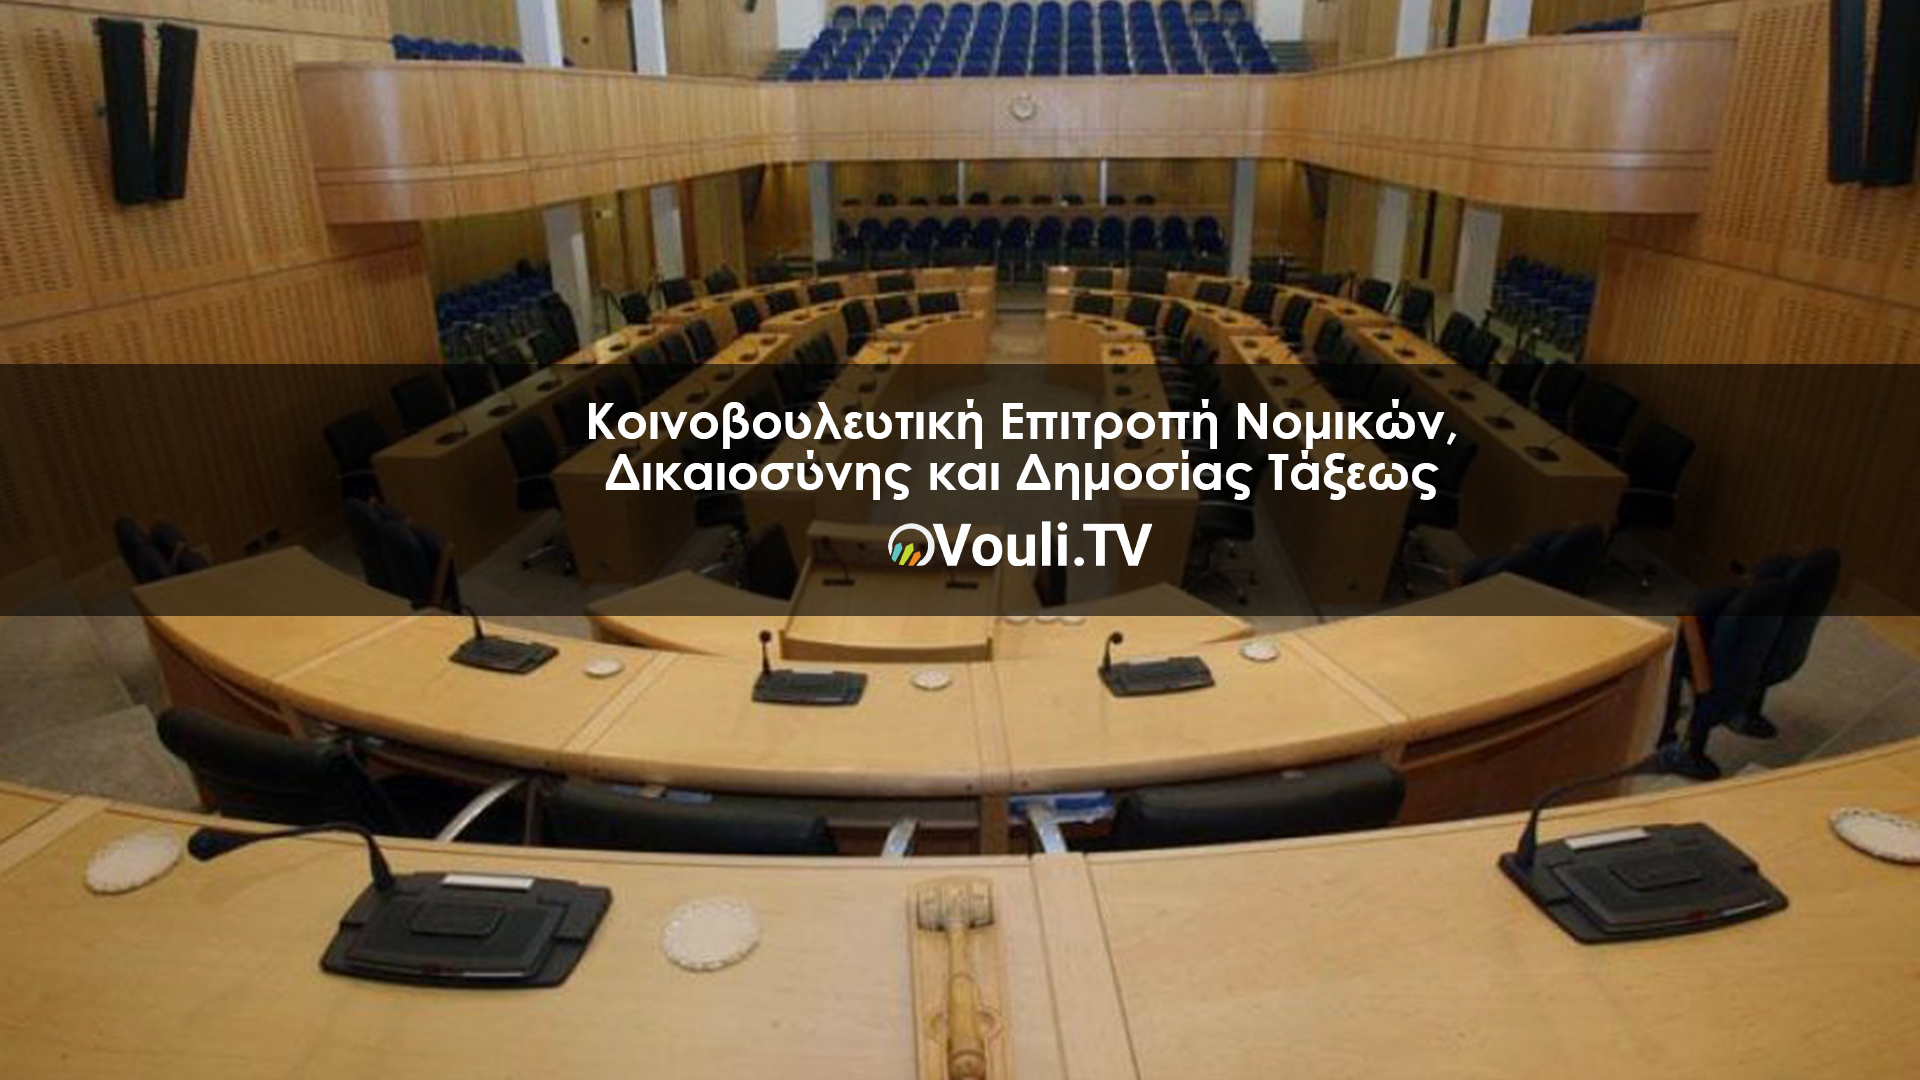 Κοινοβουλευτικής Επιτροπής Νομικών, Δικαιοσύνης και Δημοσίας Τάξεως | Vouli report 02/05/2022